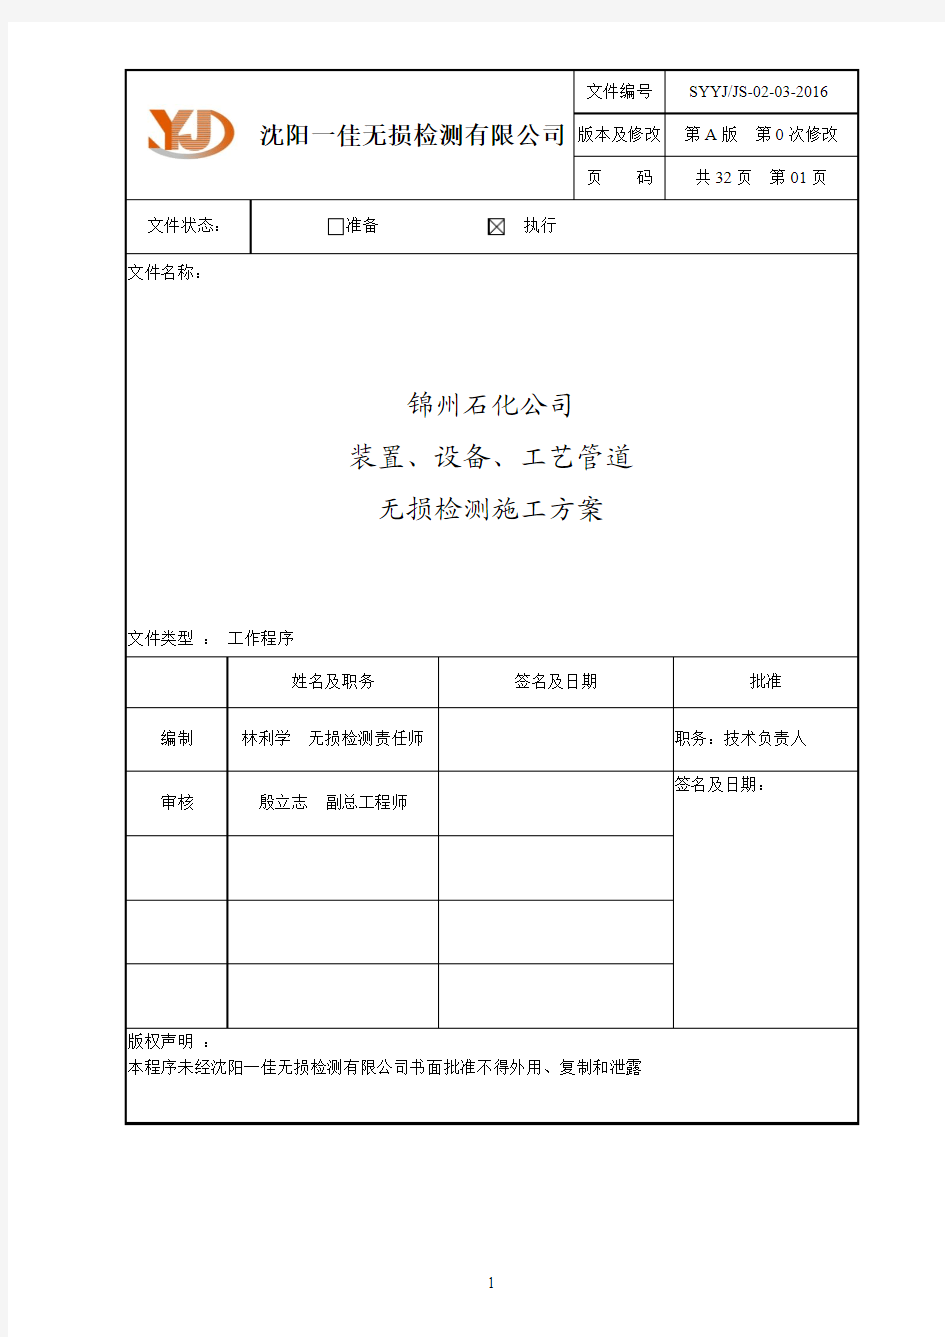 02-03锦州石化公司装置管道无损检测施工方案A0